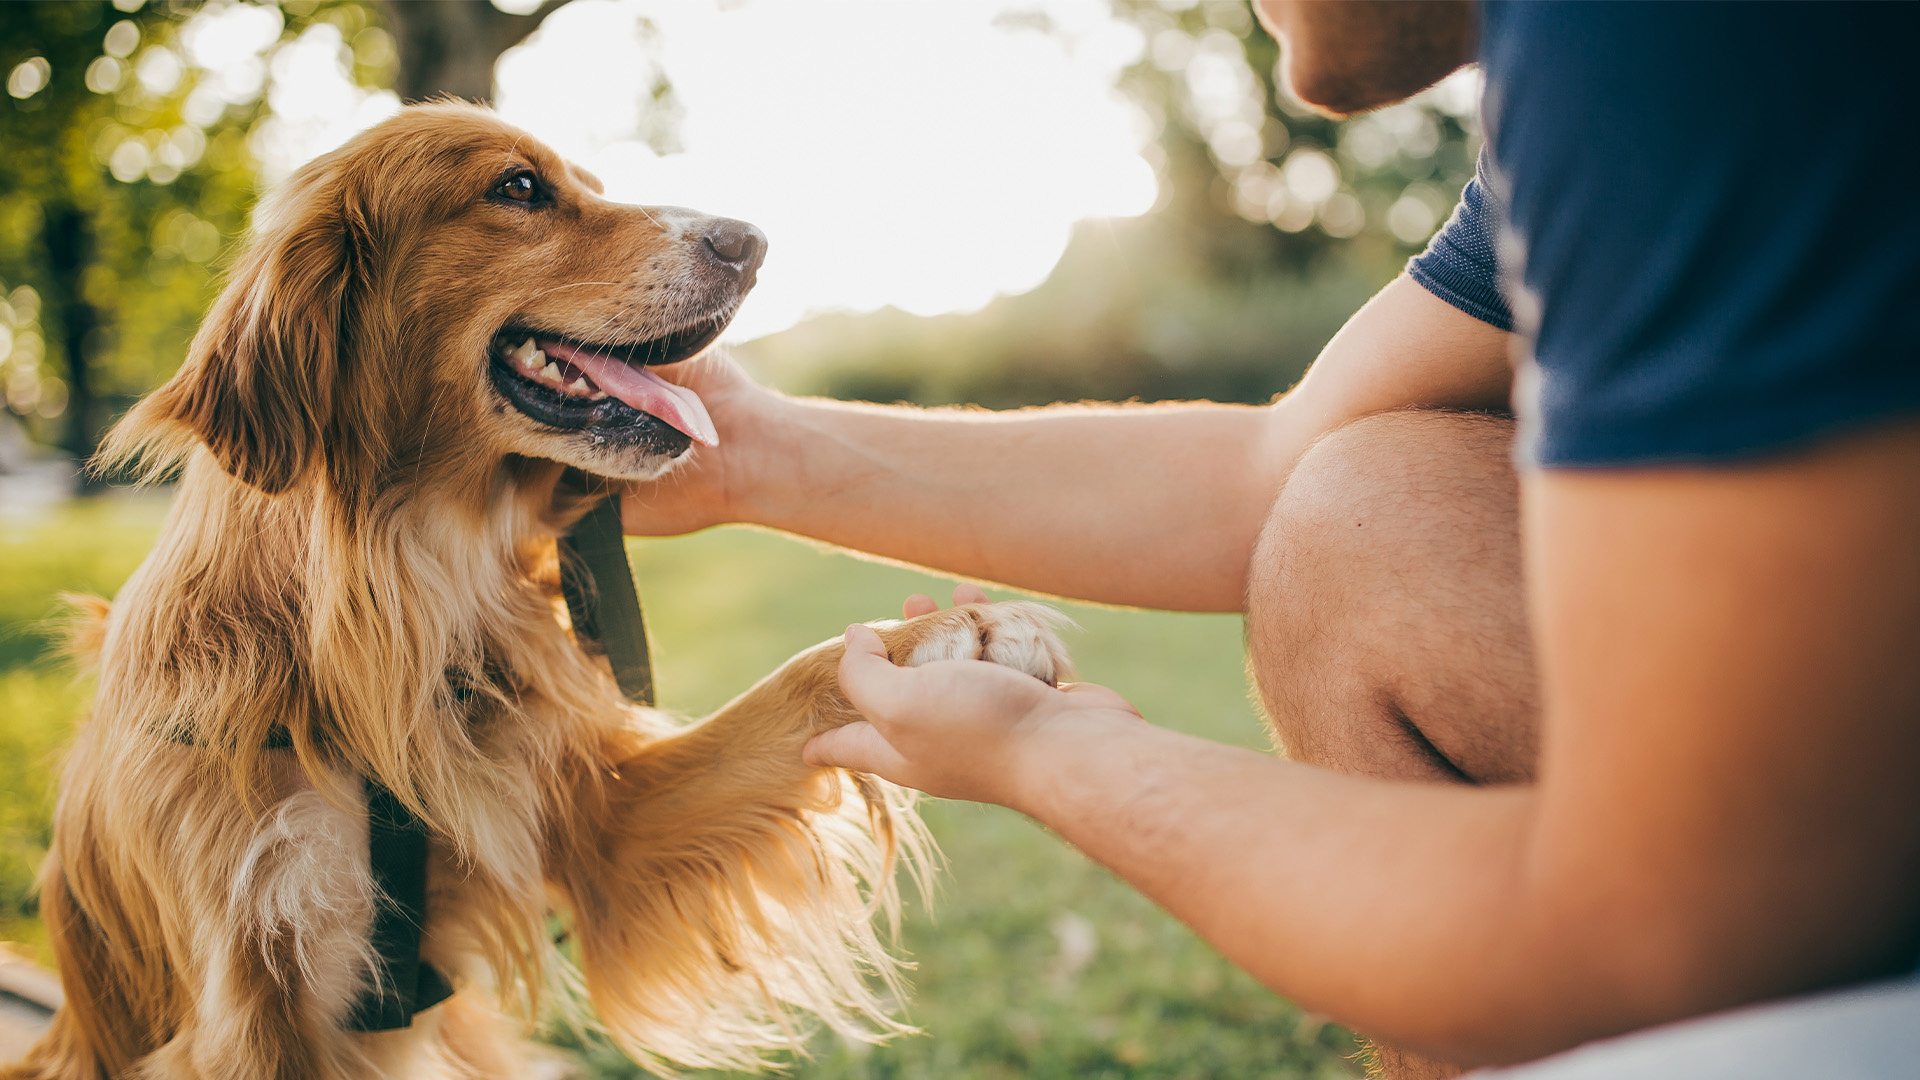 Los perros “leen” la expresión humana y son capaces de querer comunicarse a través de su actitud corporal y gestual (Getty Images)